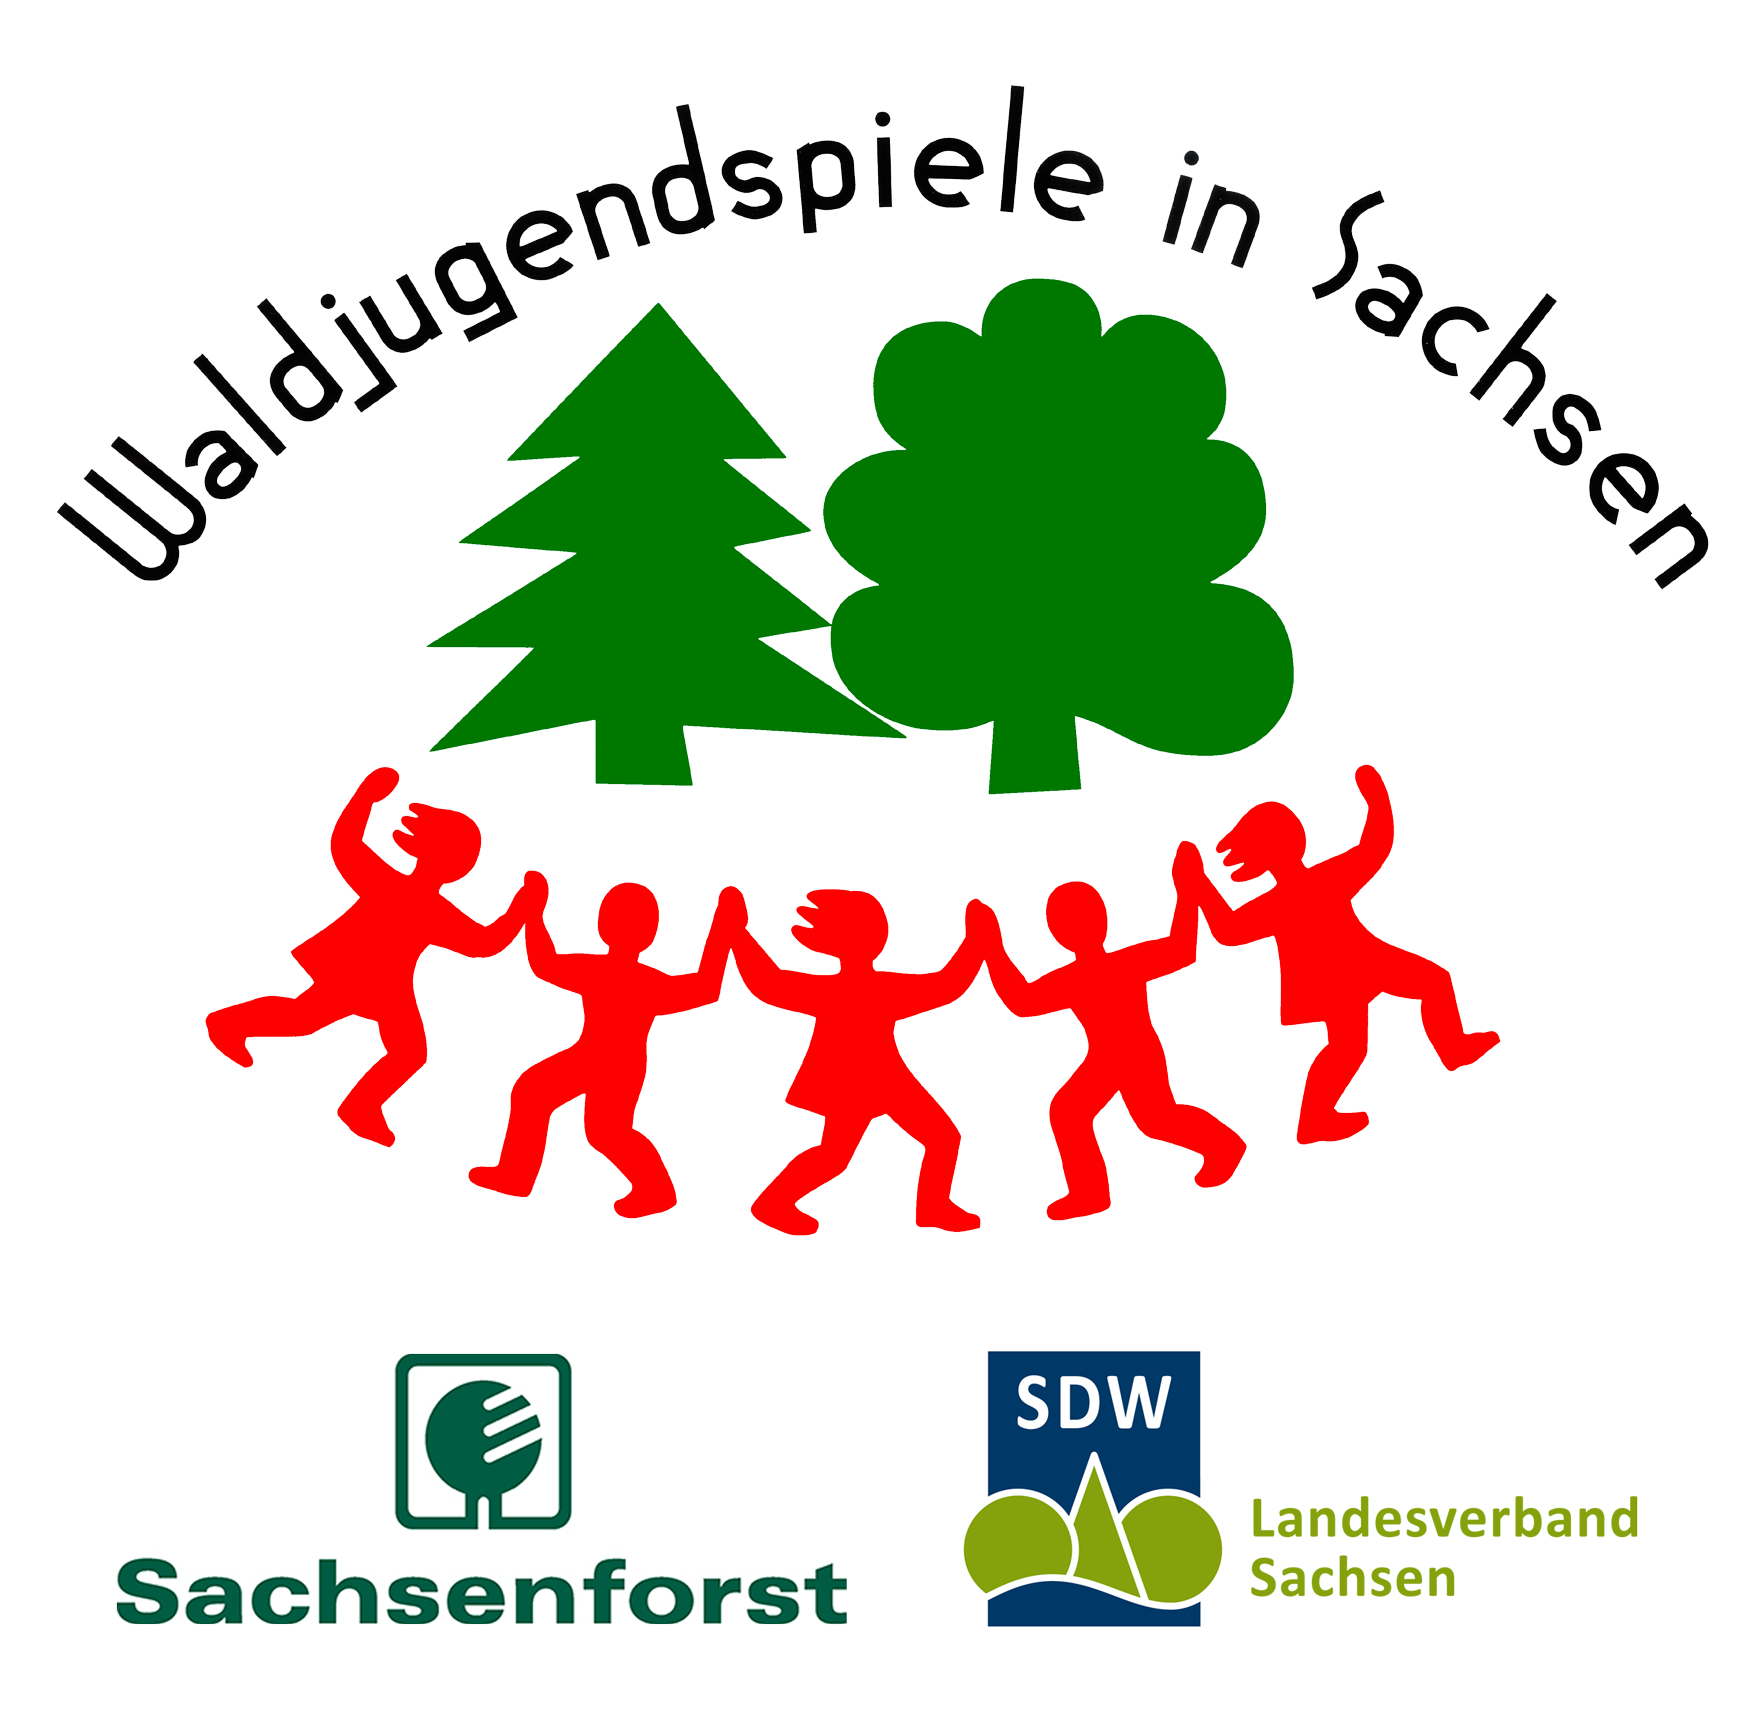 Logos der Waldjugendspiele, von Sachsenforst und der SDW